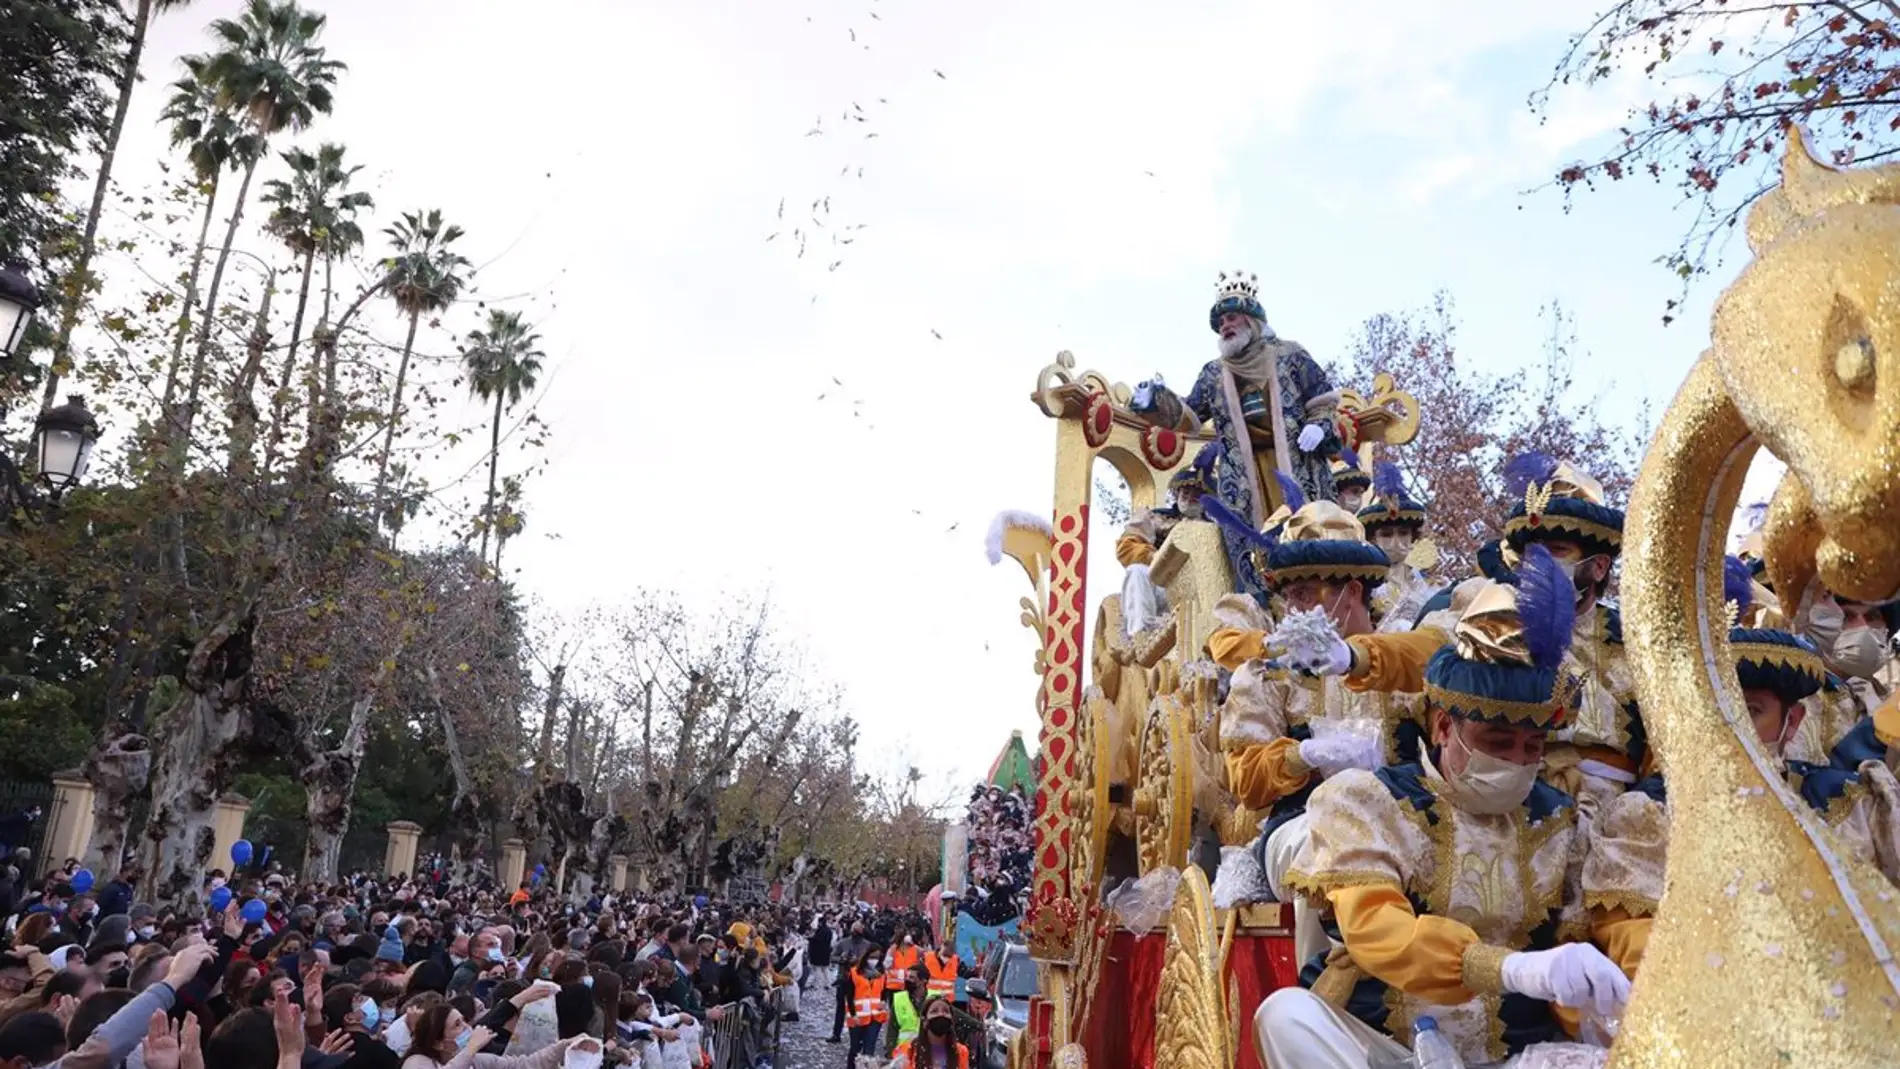 Cabalgata de los Reyes Magos en Sevilla